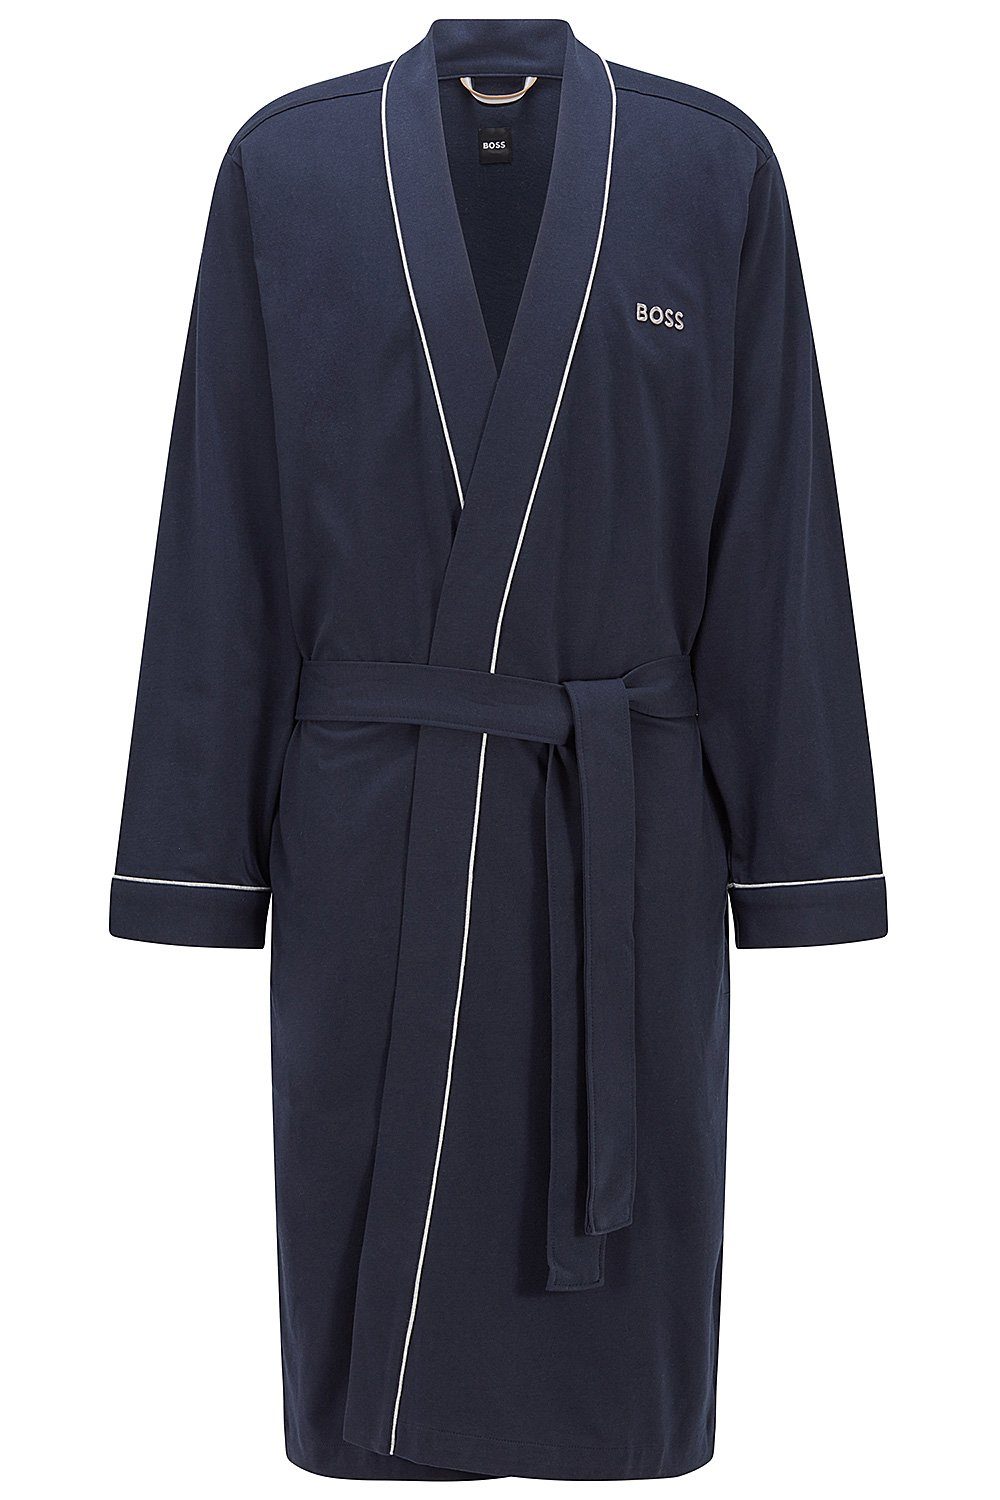 BOSS Herrenbademantel Kimono BM, Baumwolle, Taillengürtel, Morgenmantel aus Baumwolle Dark Blue (403)